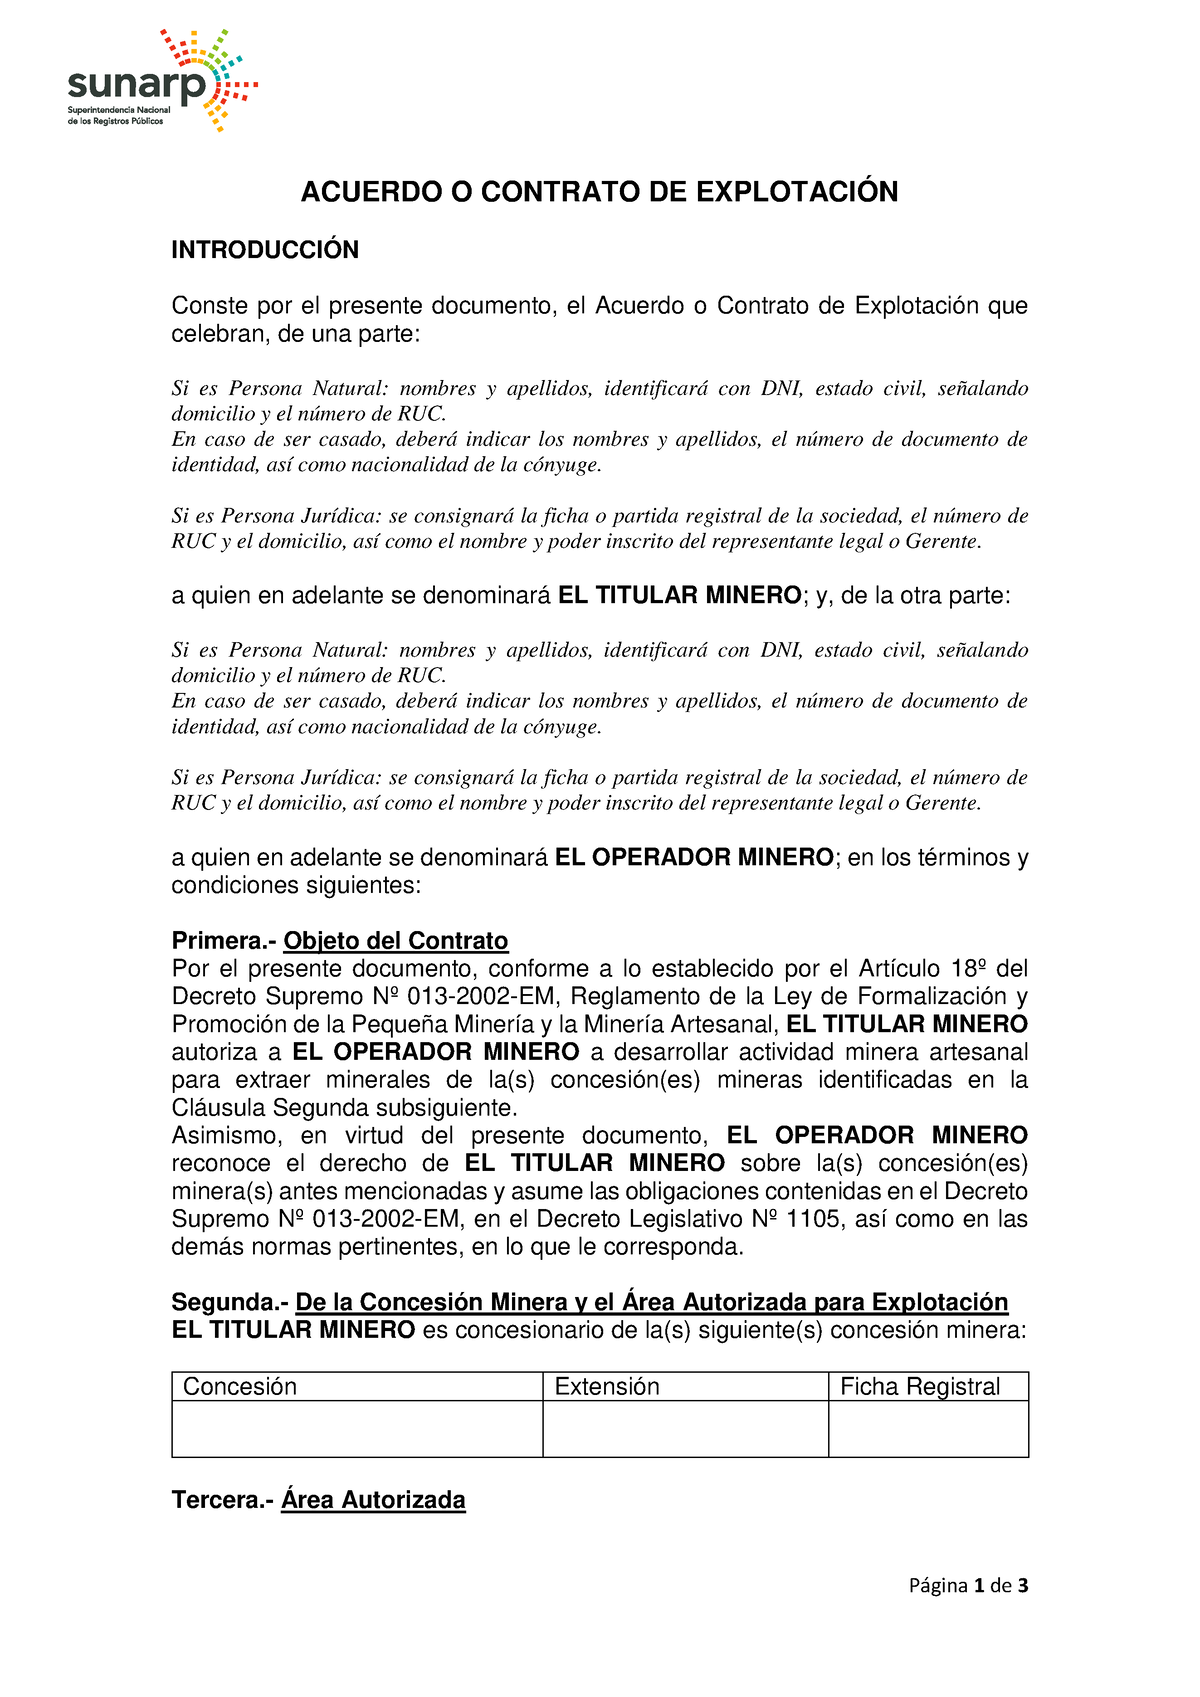 Modelo de acuerdo o contrato de explotación Sunarp - P·gina 1 de 3 ACUERDO  O CONTRATO DE EXPLOTACIÓN - Studocu